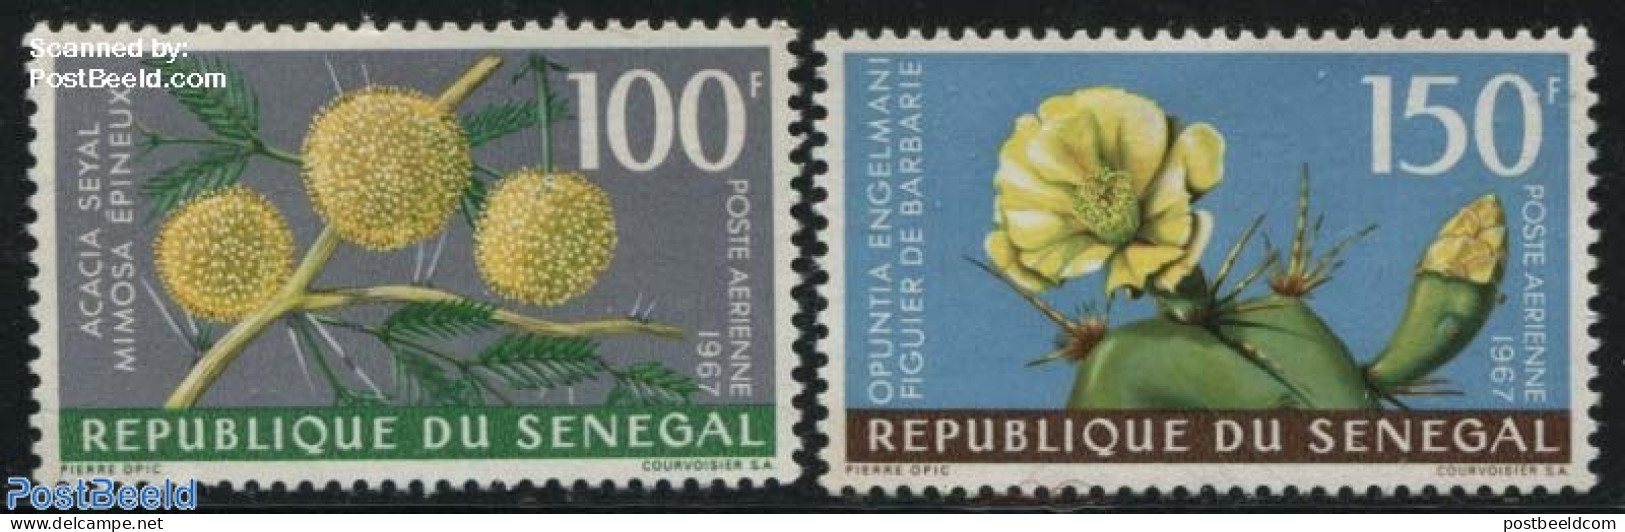 Senegal 1967 Flowers 2v, Mint NH, Nature - Flowers & Plants - Sénégal (1960-...)